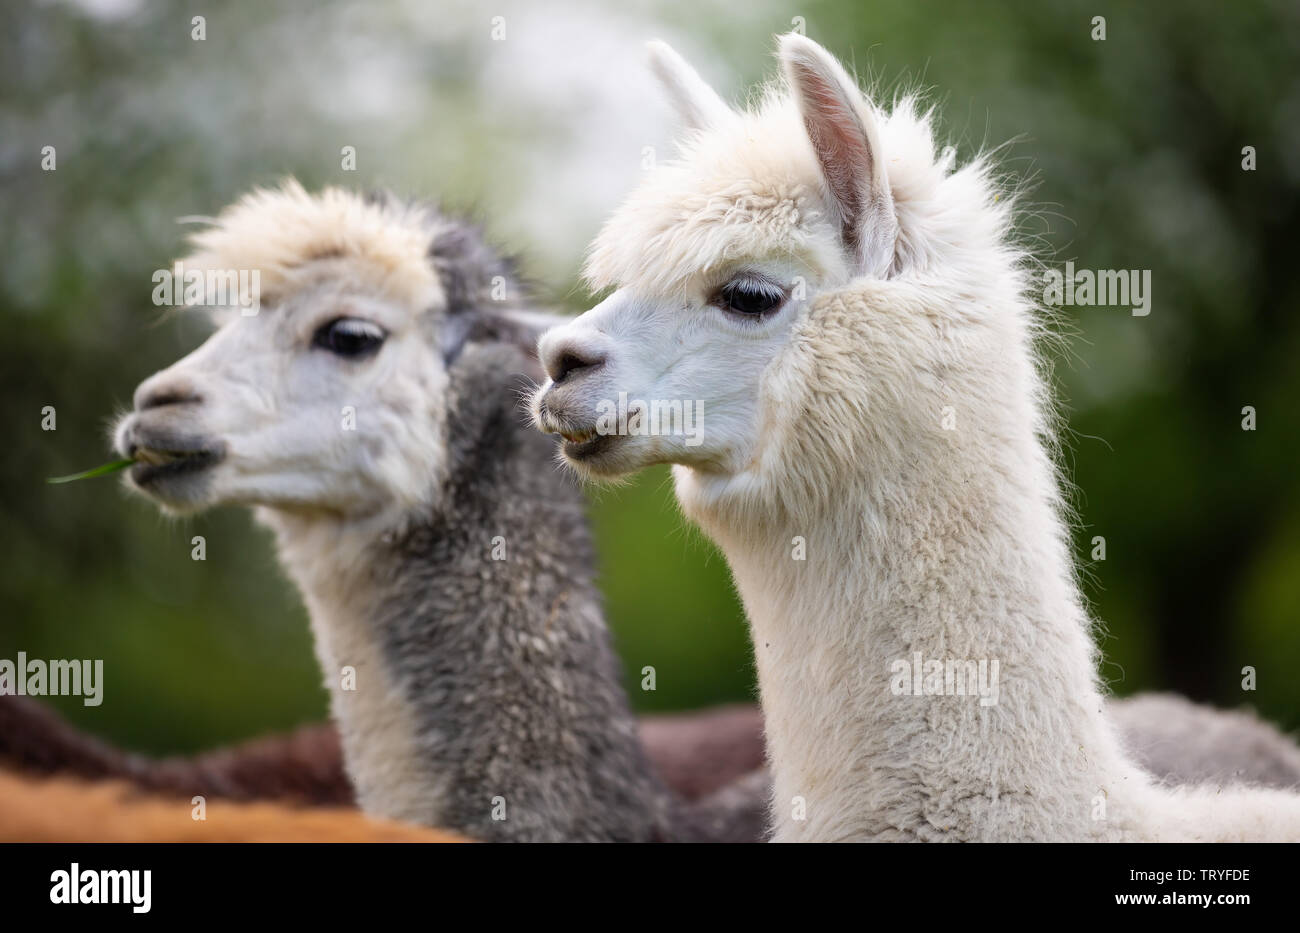 Retrato de dos Alpacas, mamíferos Sudamericanos Foto de stock